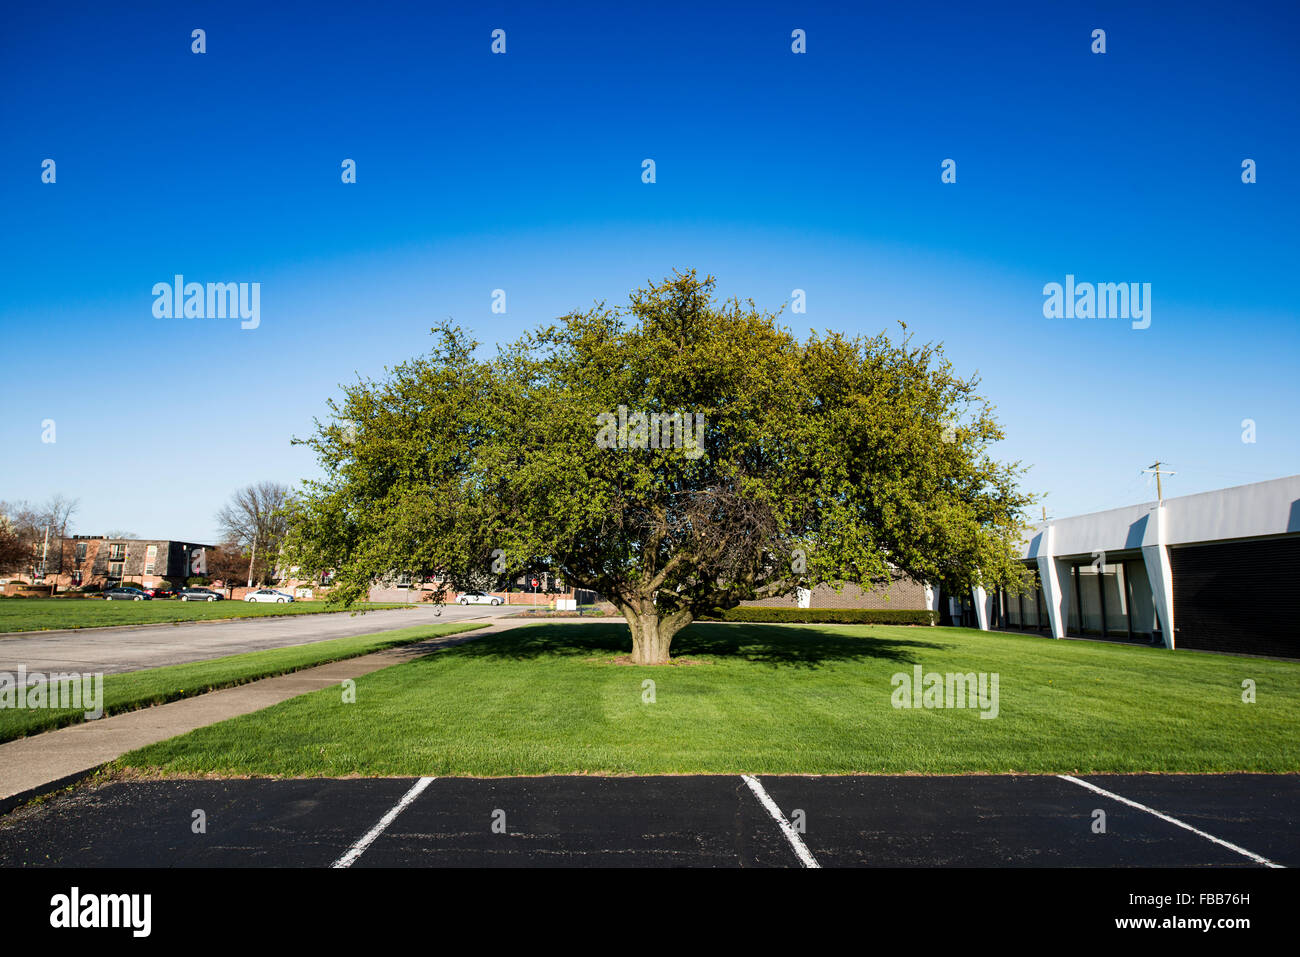 Prise de vue au grand angle d'un très large arbre isolé dans une aire de stationnement et sur le terrain au printemps Banque D'Images